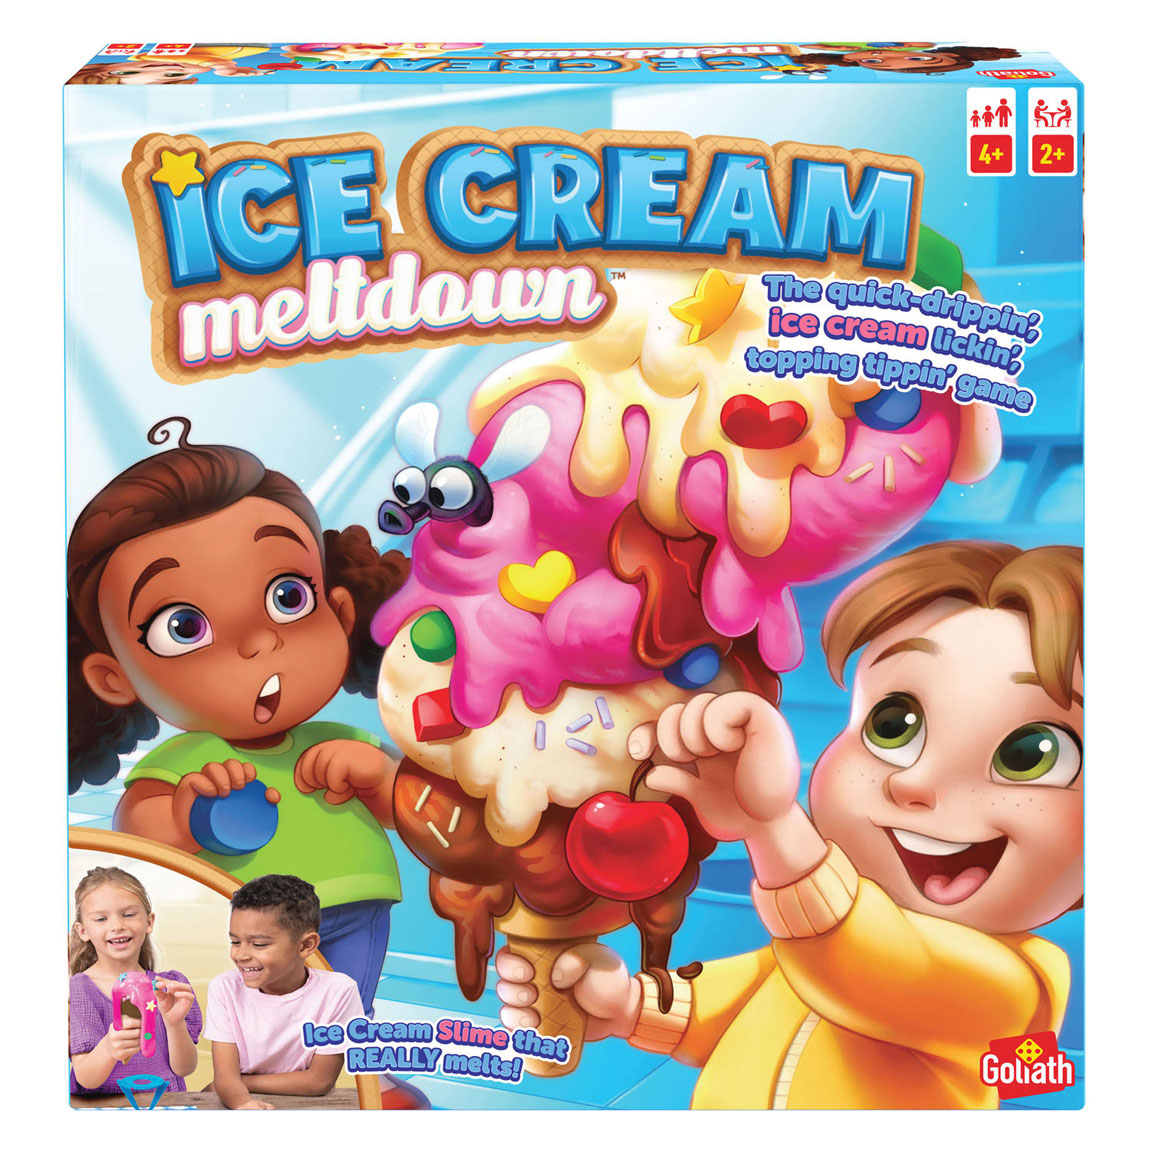 Fusion de crème glacée - Un jeu d'enfant